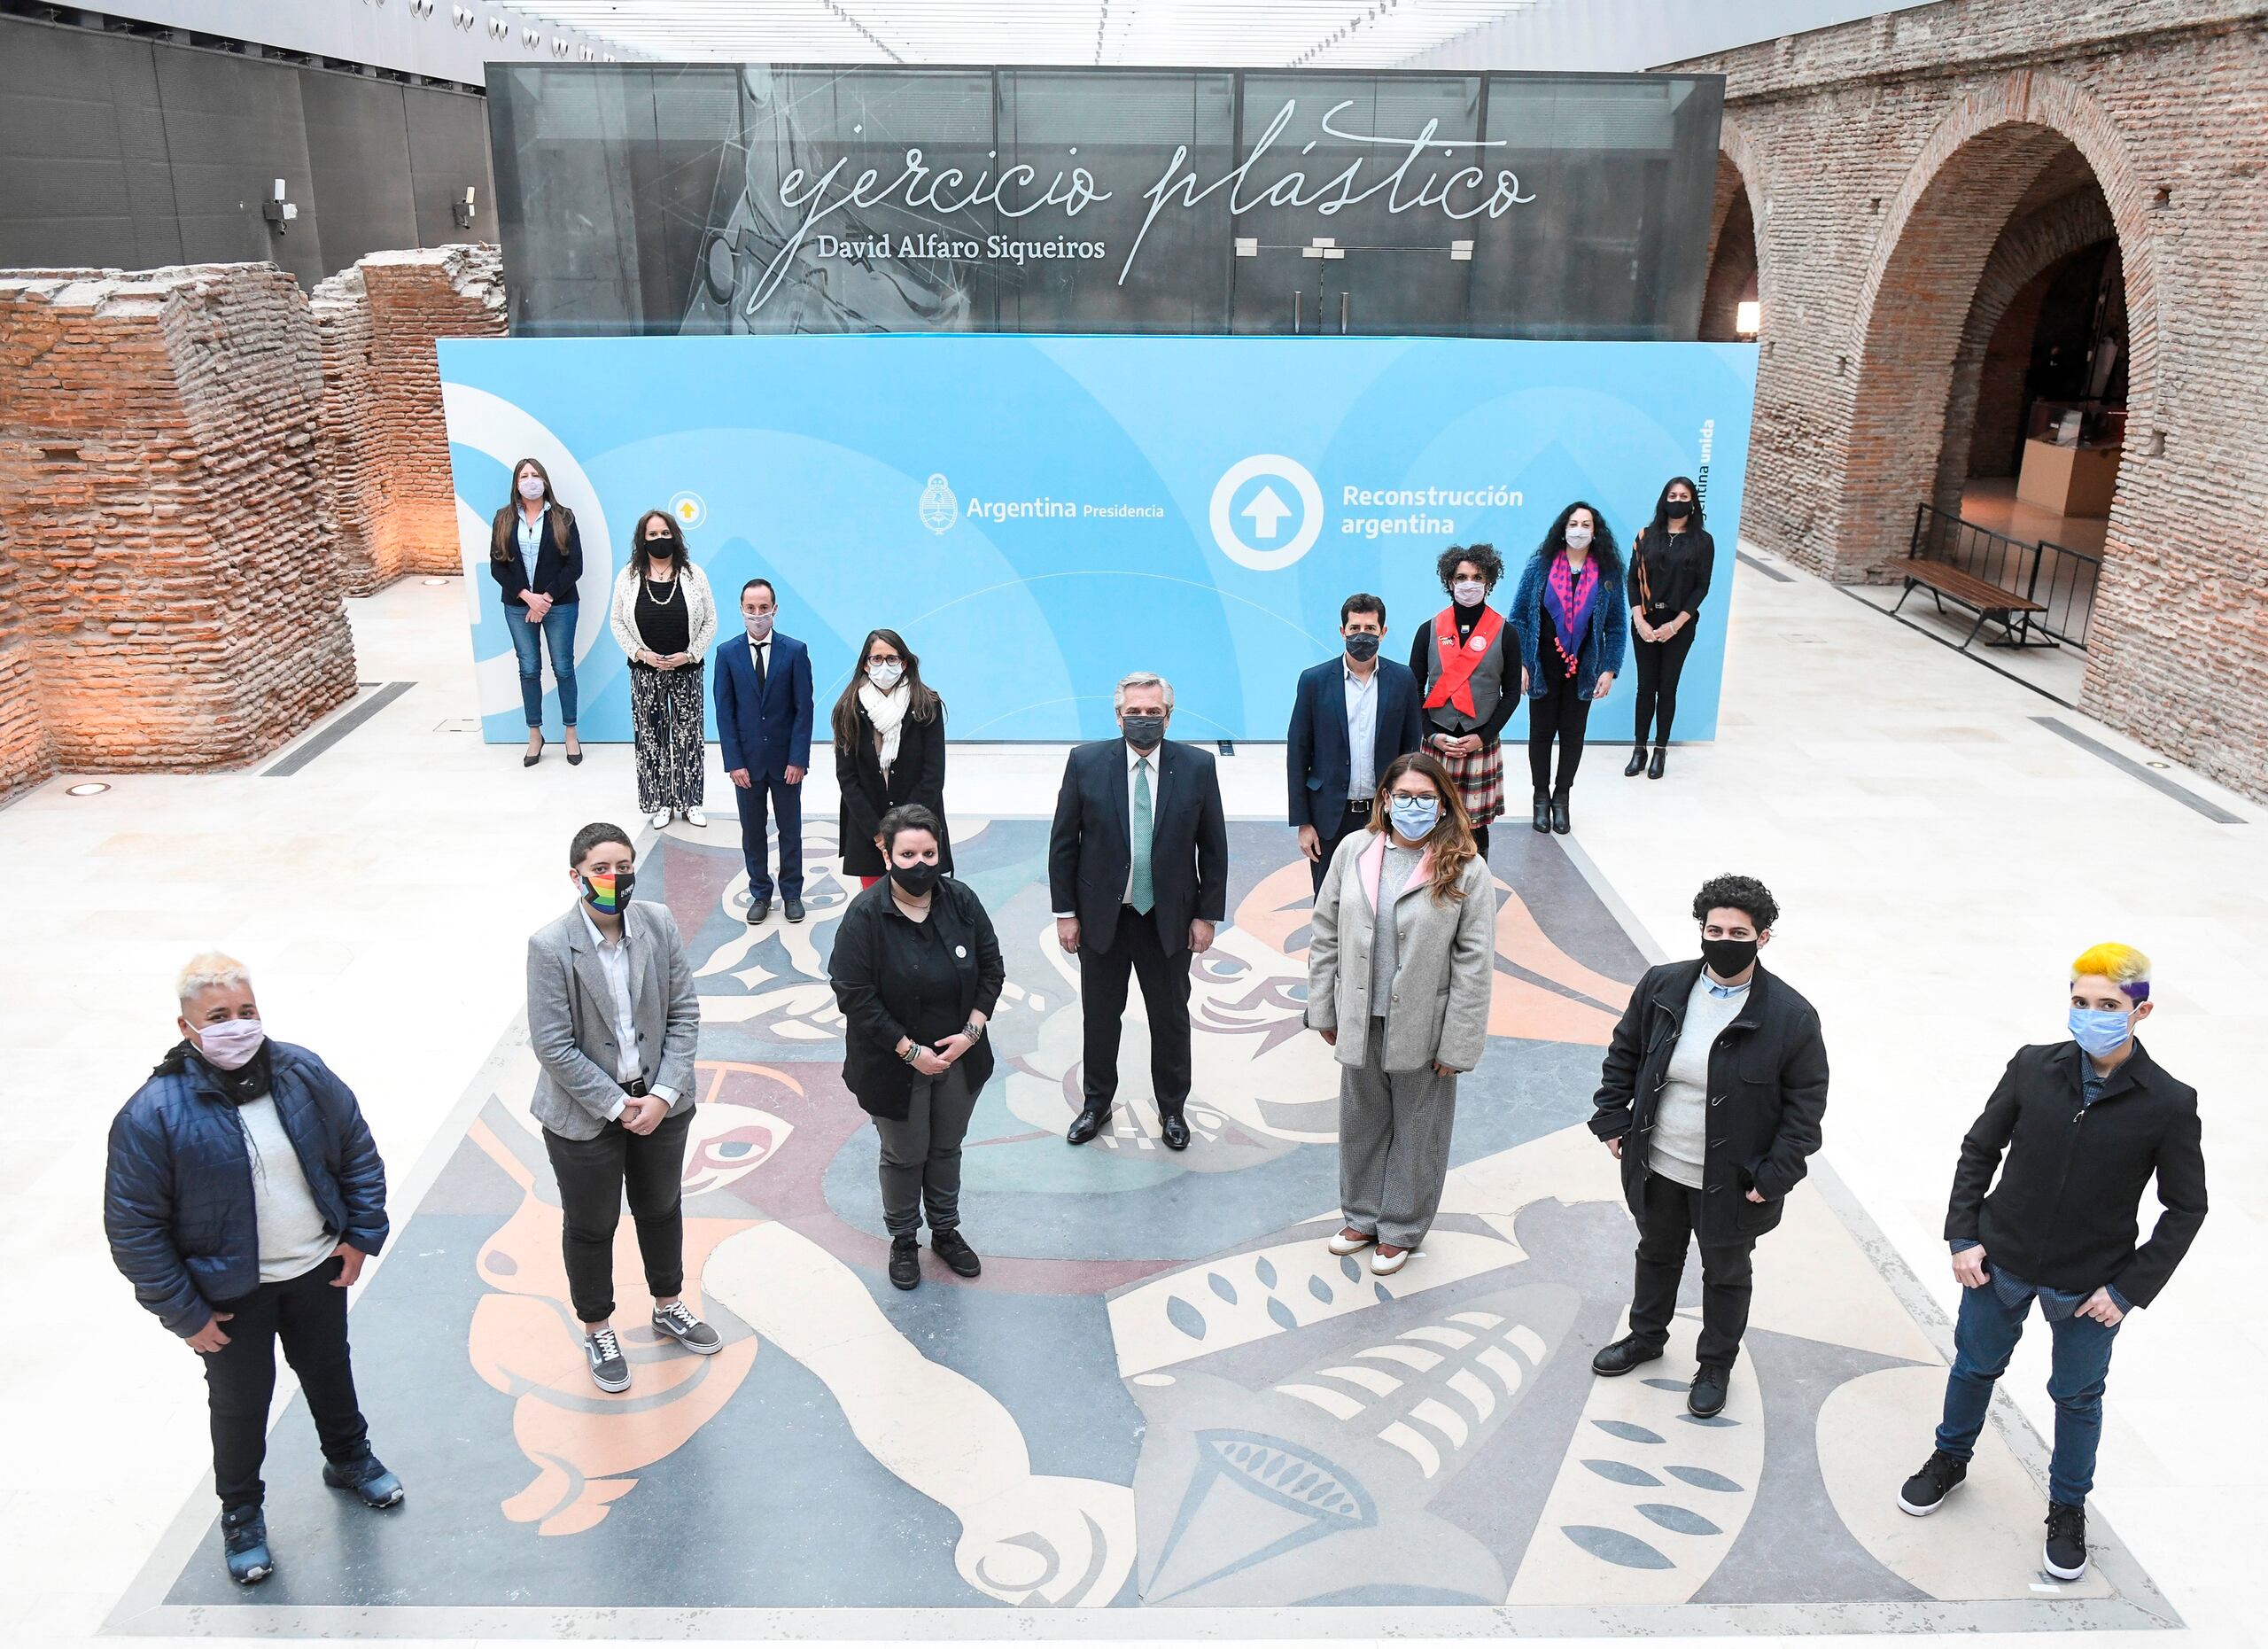 El presidente Alberto Fernández, al centro, junto a otras autoridades y miembros de organismos sociales posan emulando una "x", en el Museo del Bicentenario de la Casa Rosada.